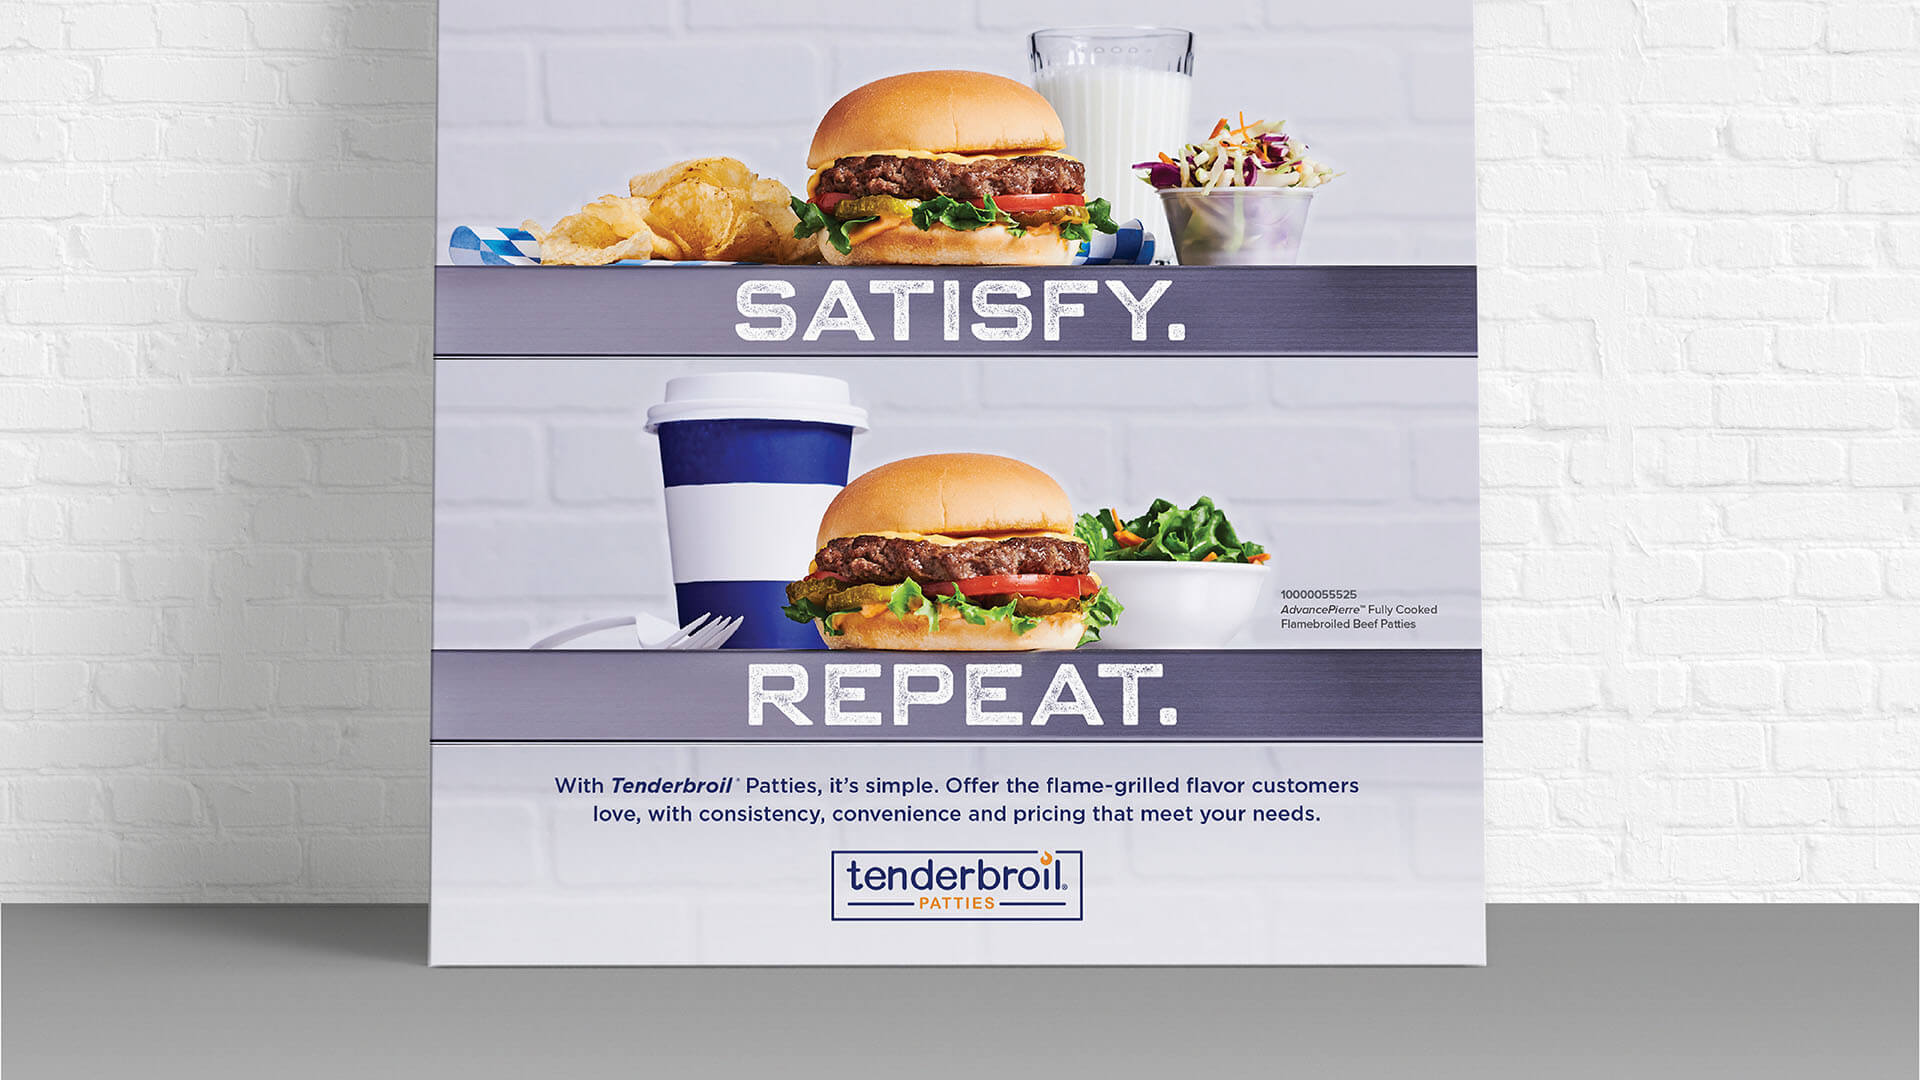 Tenderbroil® Patties Satisfy. Repeat. Hamburger Poster